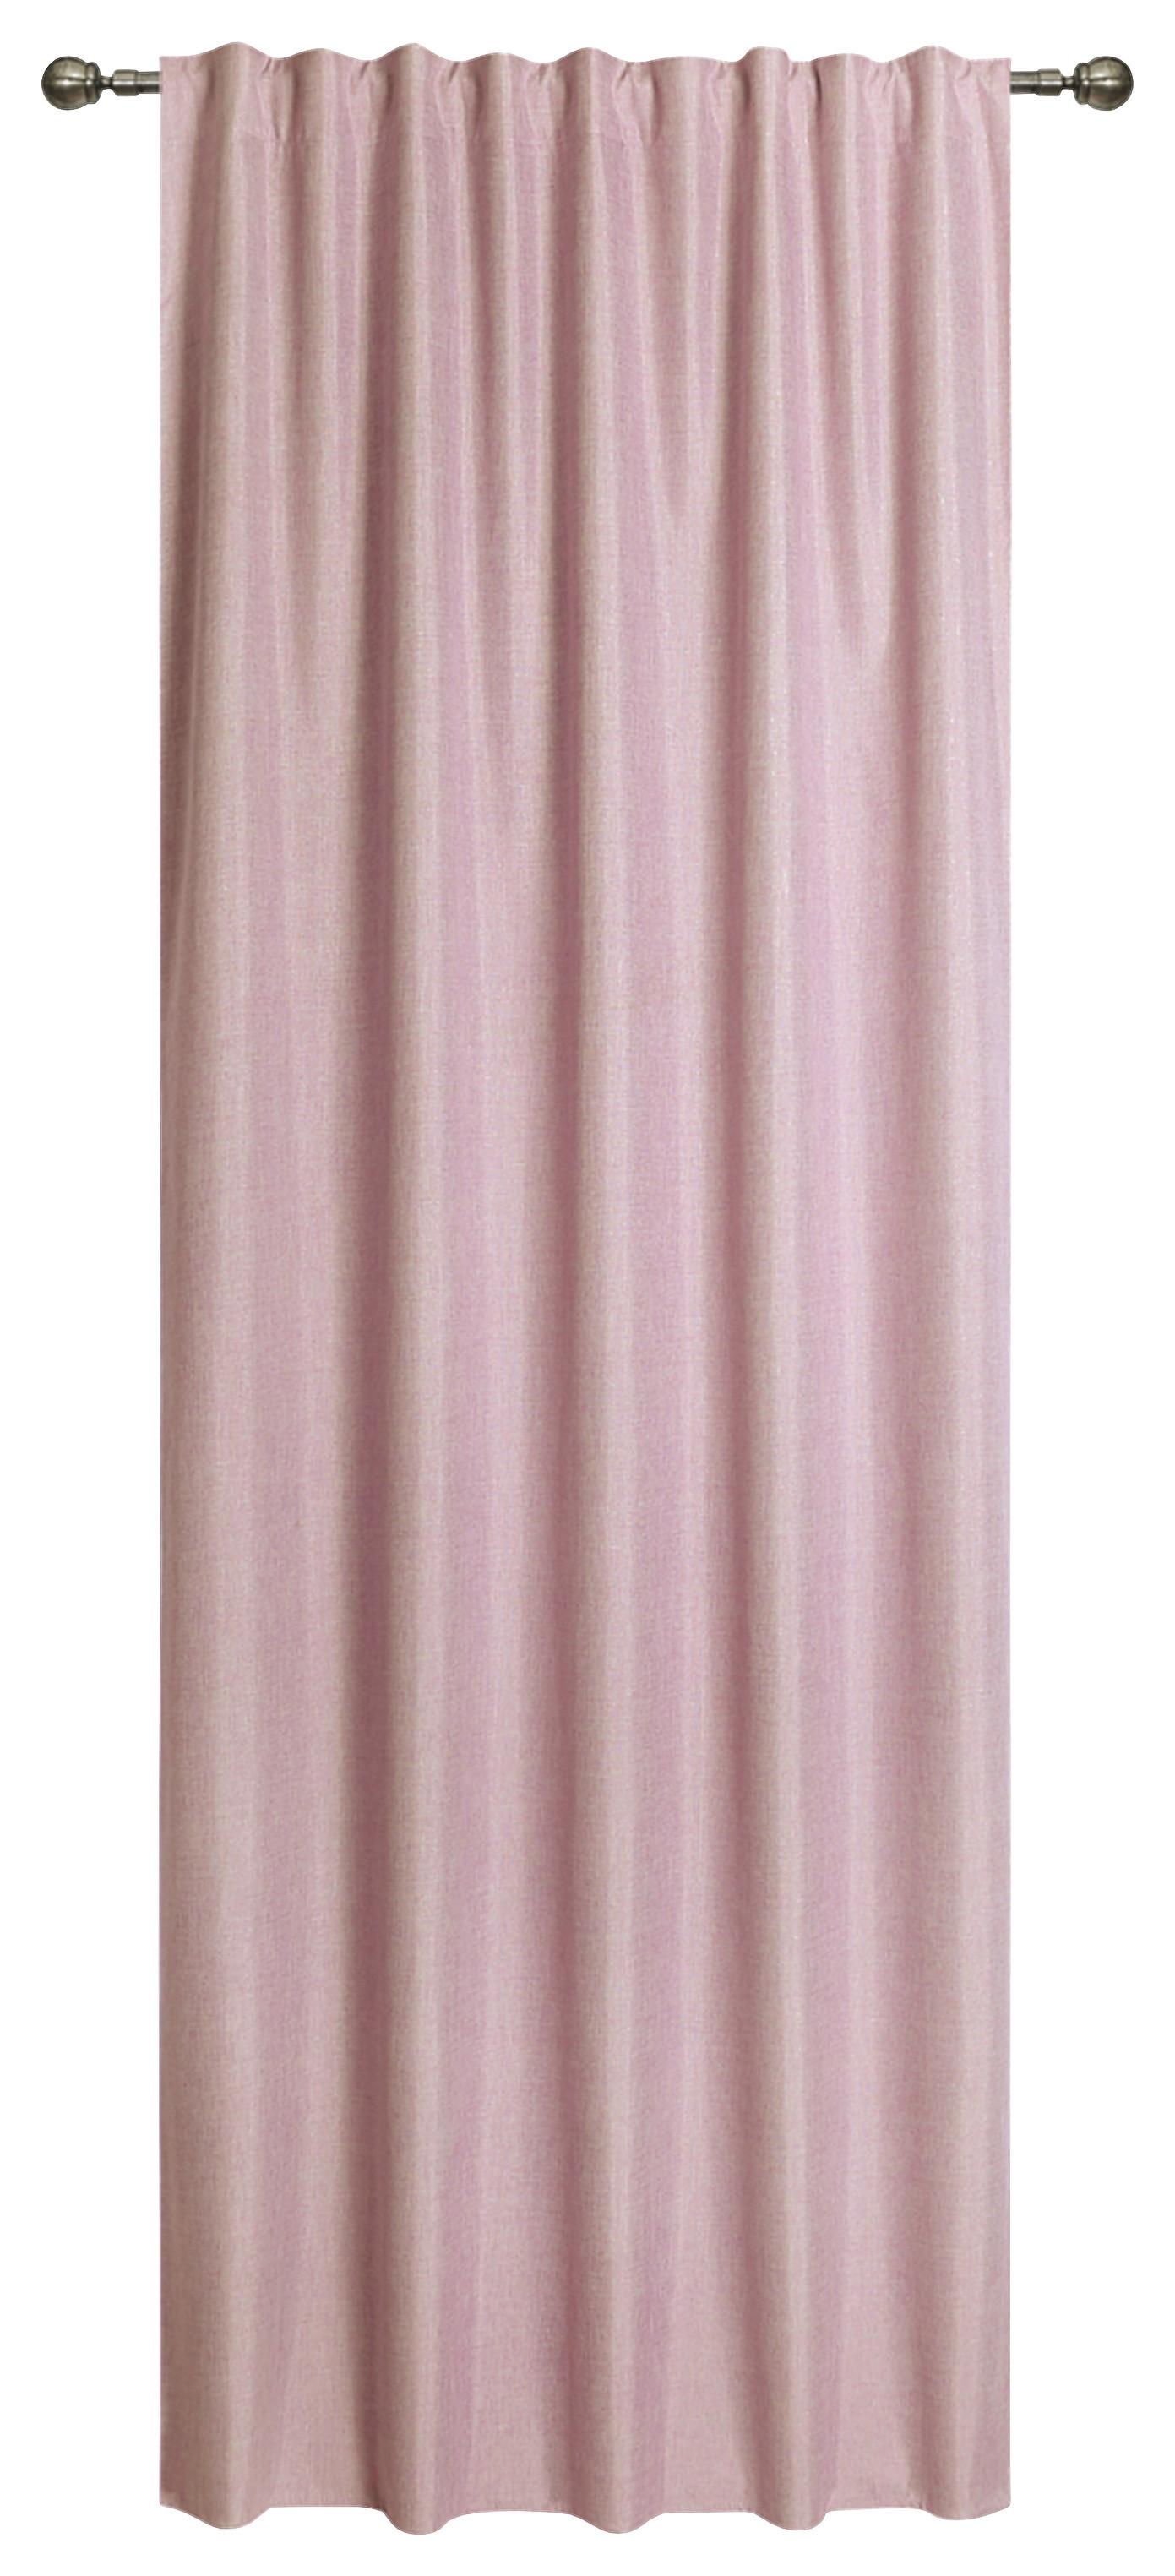 Készfüggöny Ohio - Rózsaszín, romantikus/Landhaus, Textil (140/245cm) - James Wood